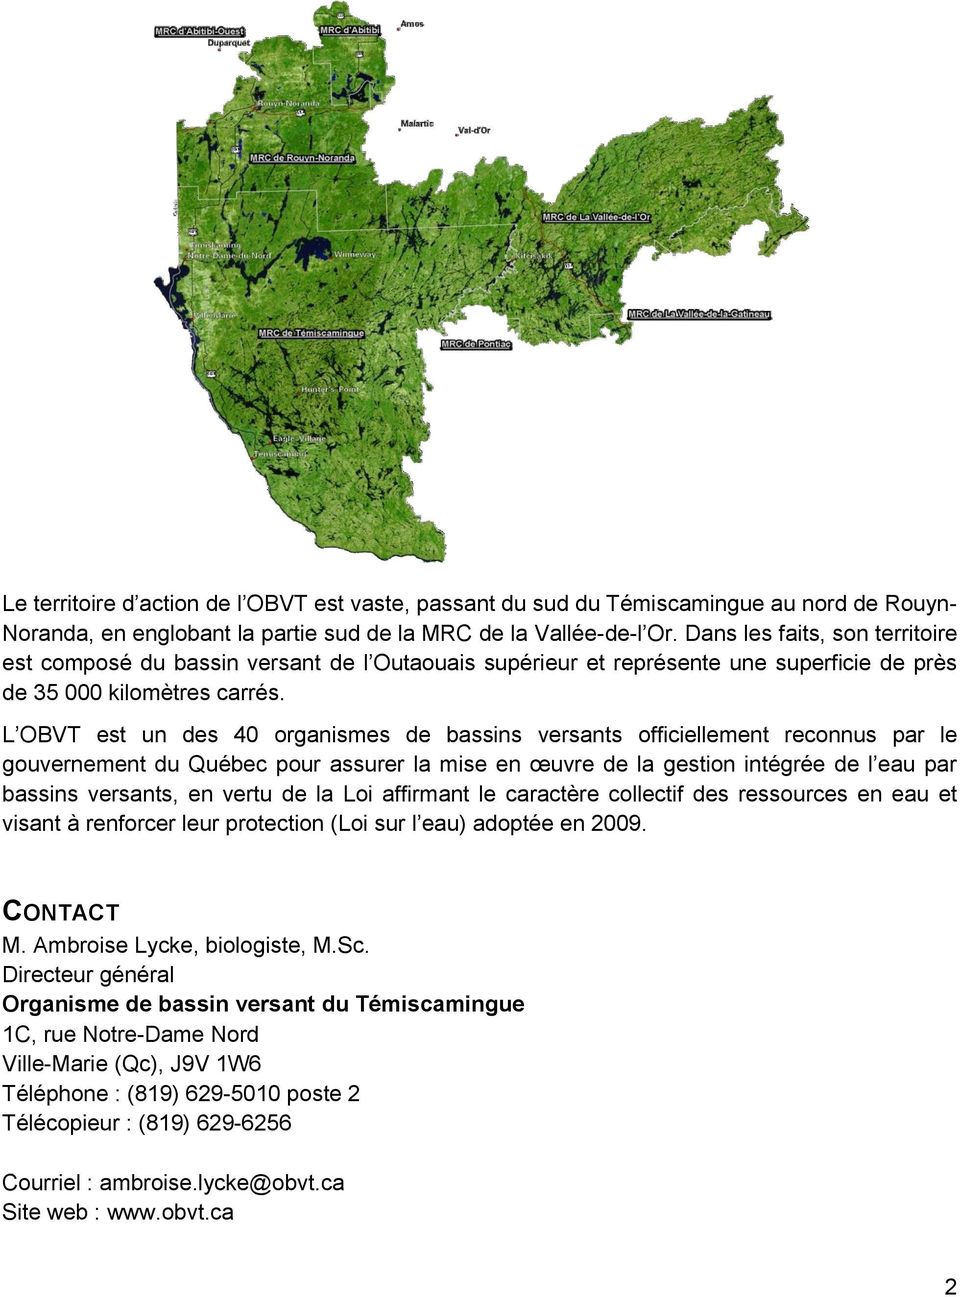 L OBVT est un des 40 organismes de bassins versants officiellement reconnus par le gouvernement du Québec pour assurer la mise en œuvre de la gestion intégrée de l eau par bassins versants, en vertu